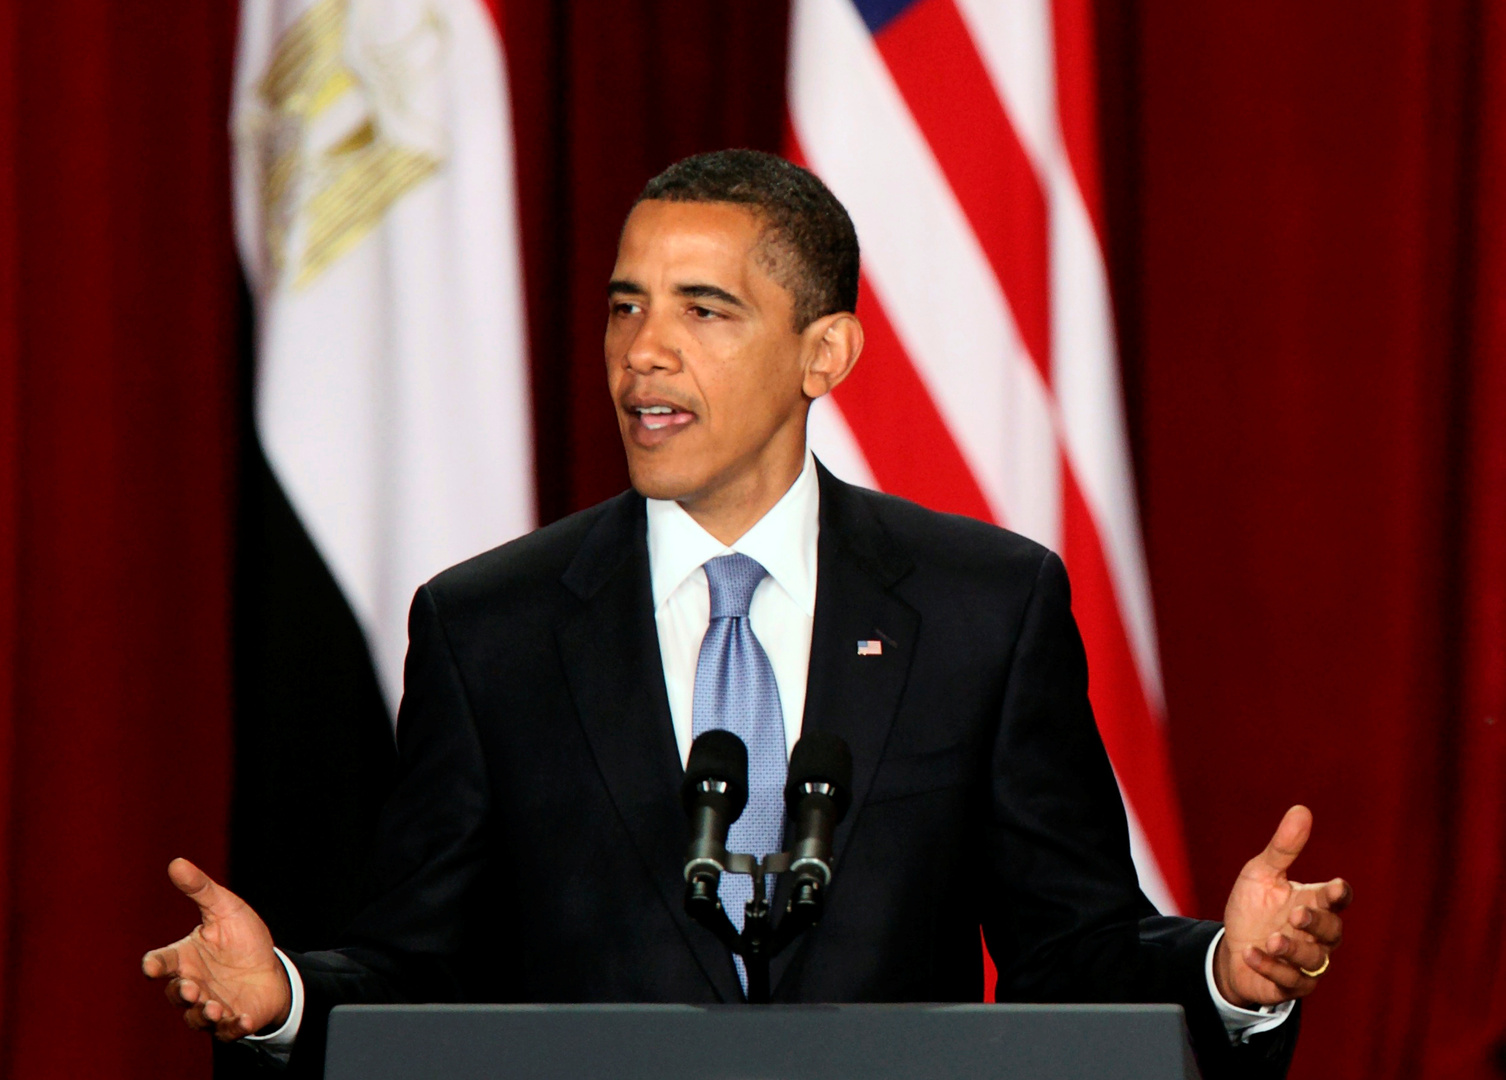 أوباما مذكرا بخطابه في جامعة القاهرة: كان بإمكاني حينها تخيل بداية شرق أوسط جديد